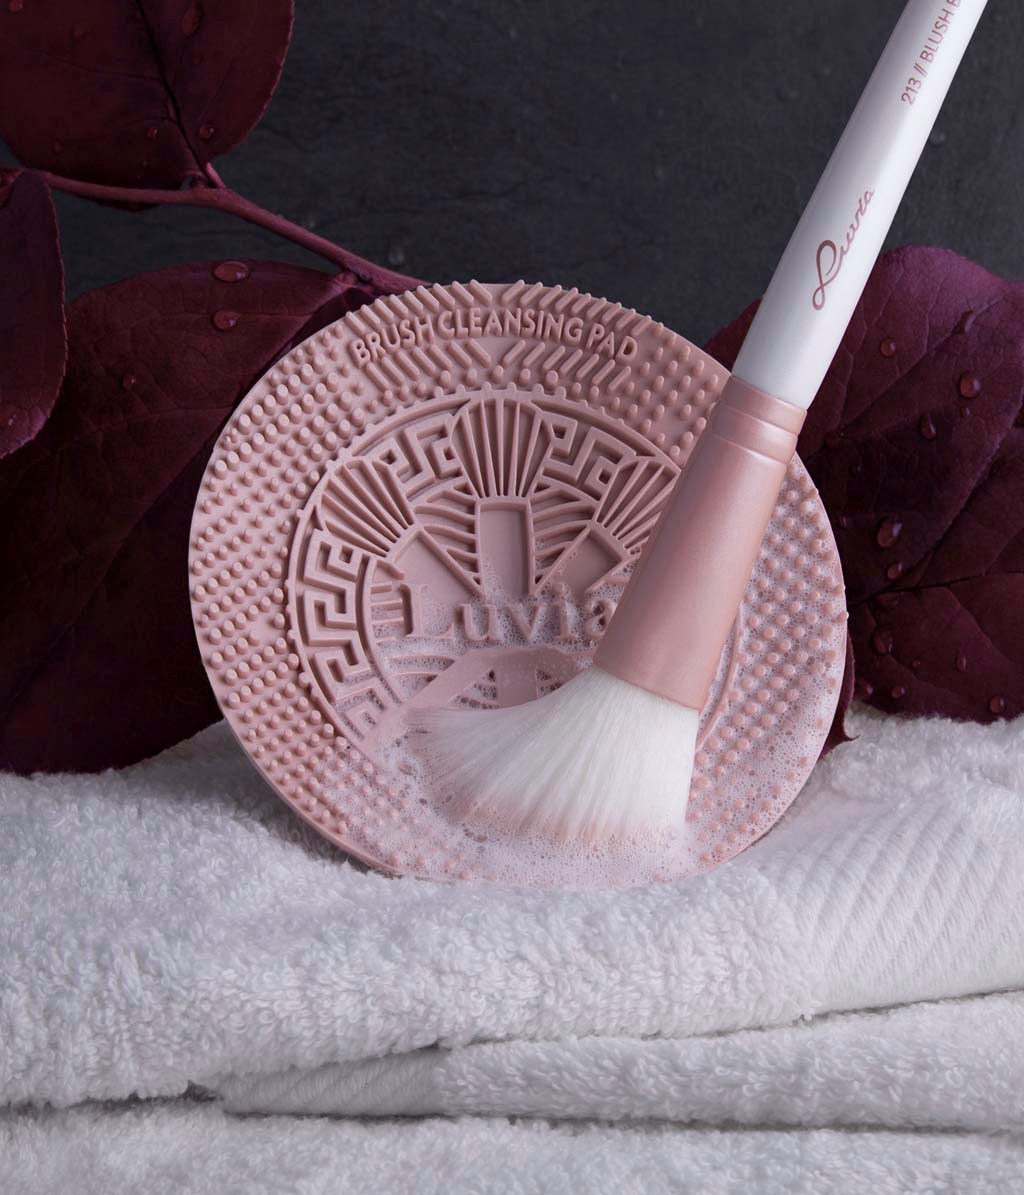 Luvia Cosmetics Kosmetikpinsel-Set »Brush Cleansing Pad - Black«, Design  für wassersparende Reinigung; passt bequem in jede Hand. online bestellen |  UNIVERSAL